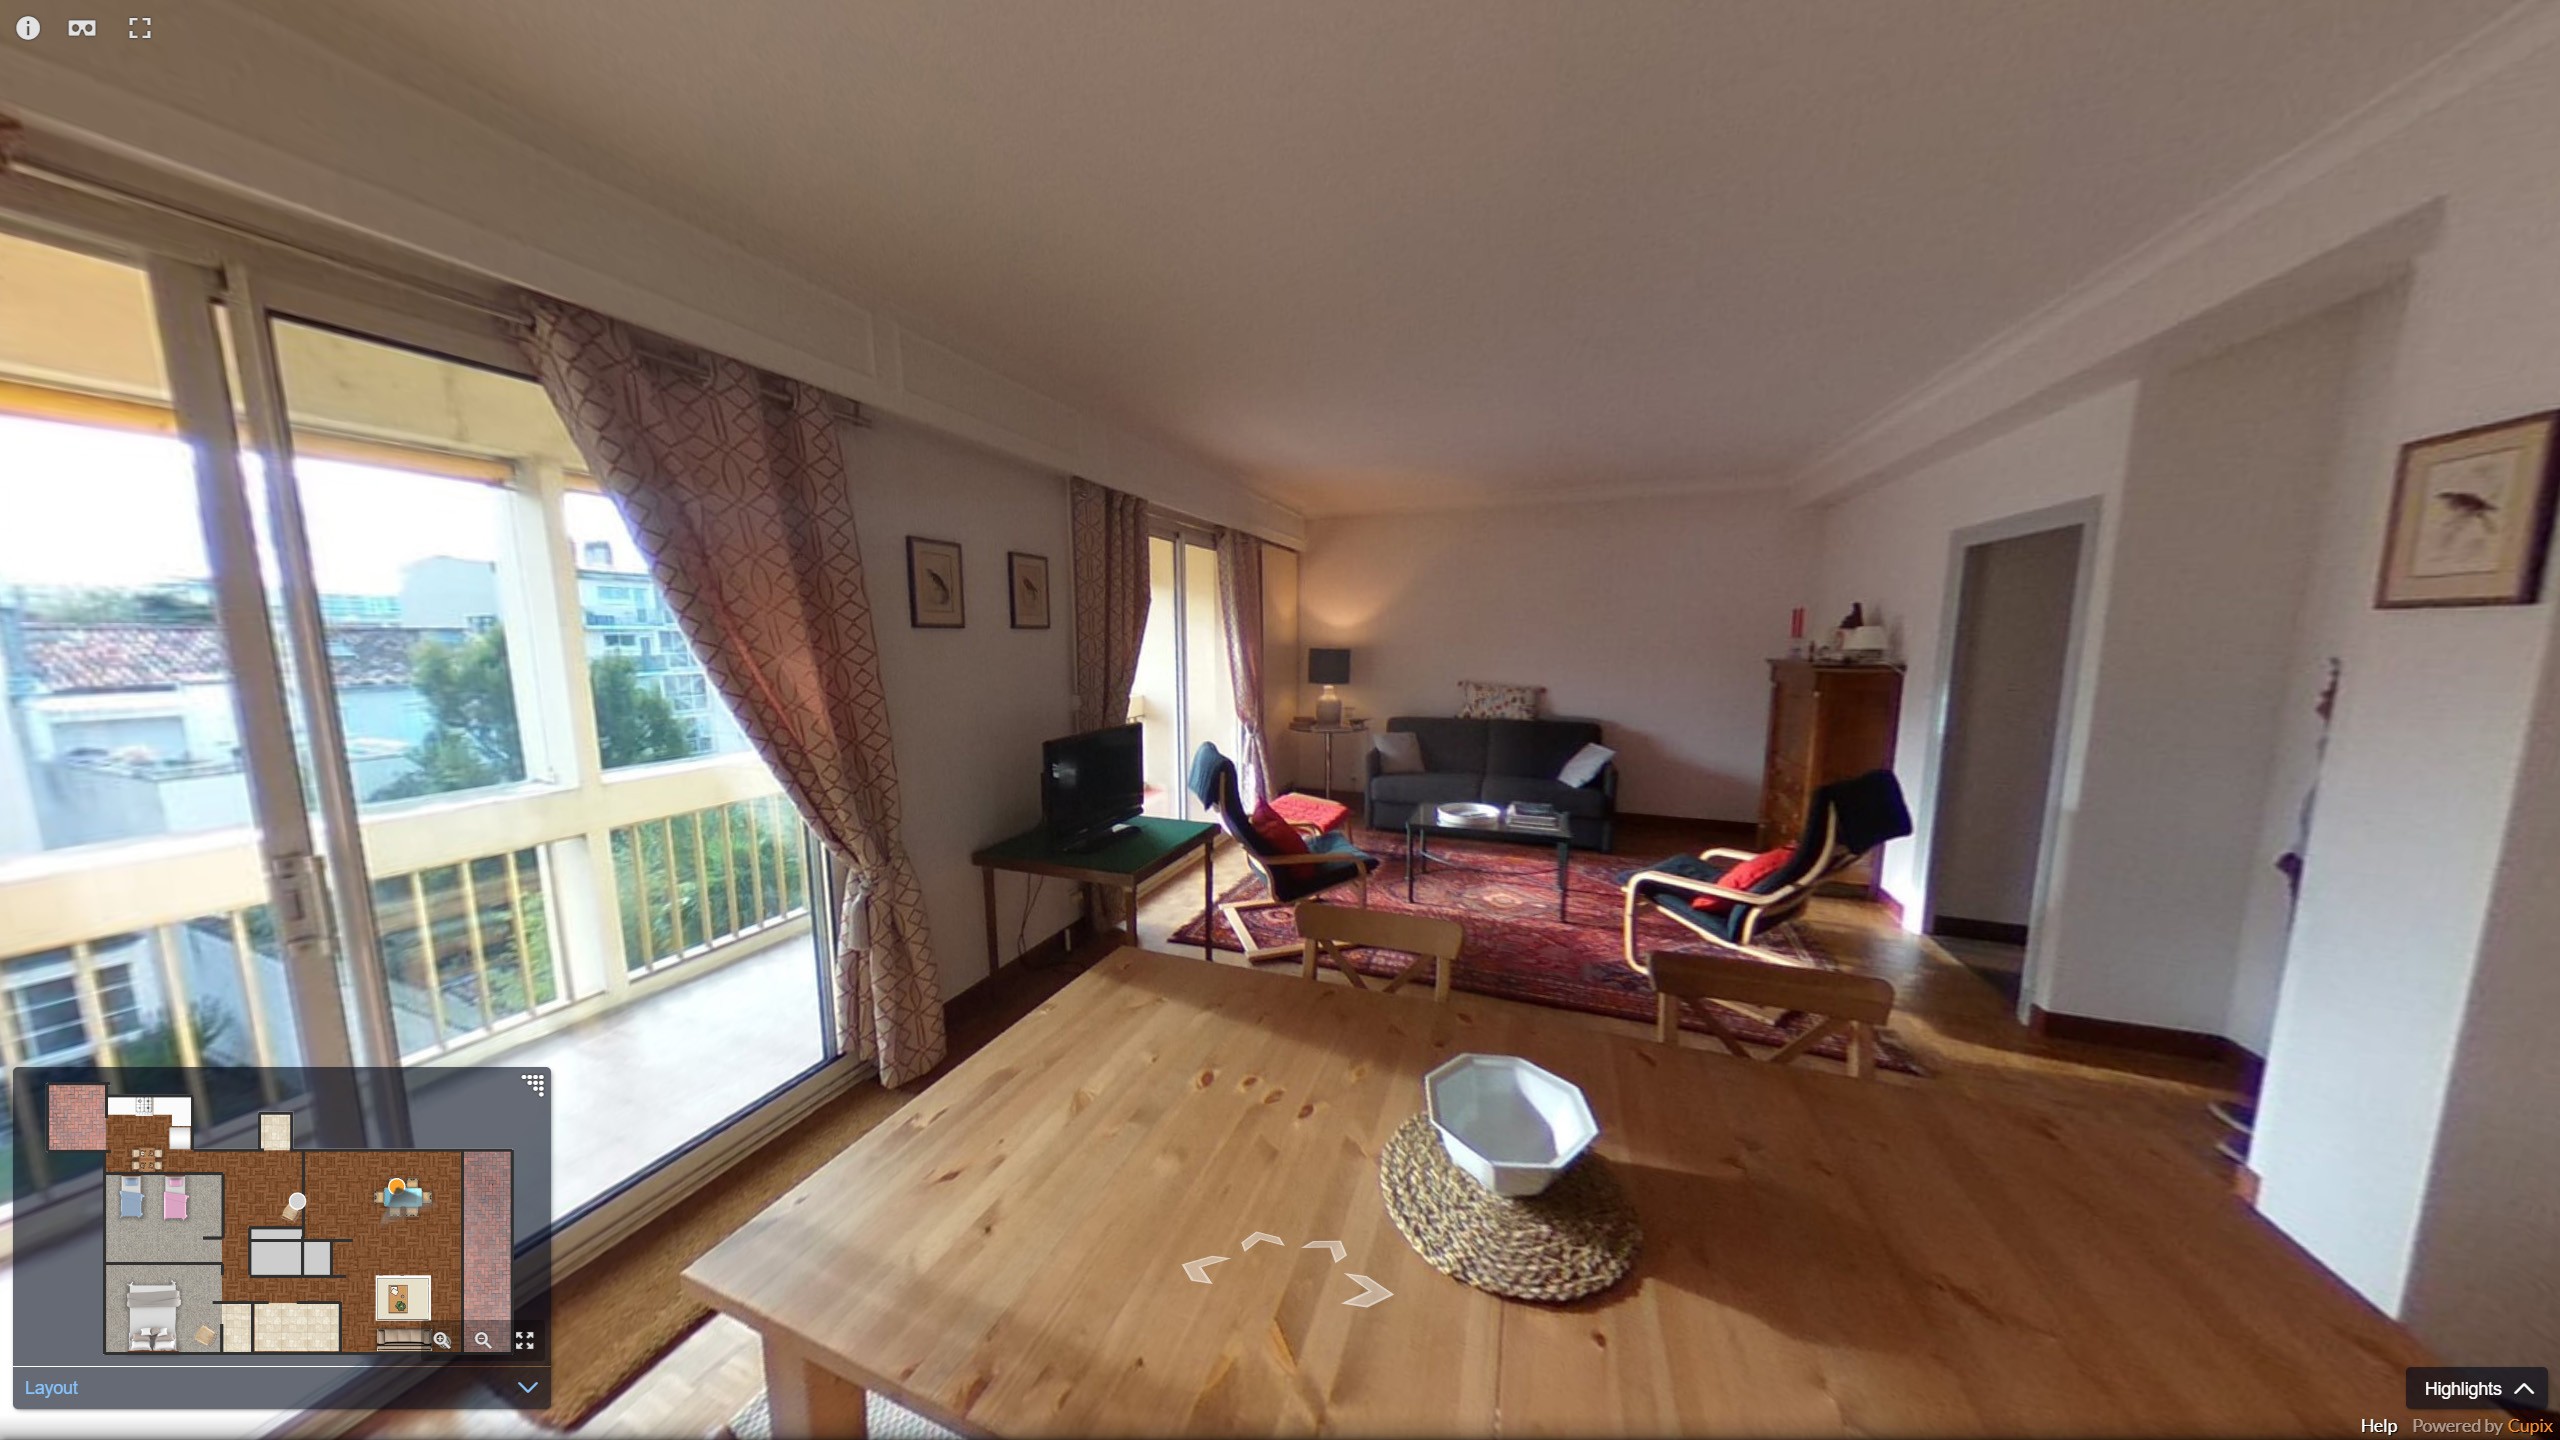  Visite  virtuelle 360  appartement  Toulouse